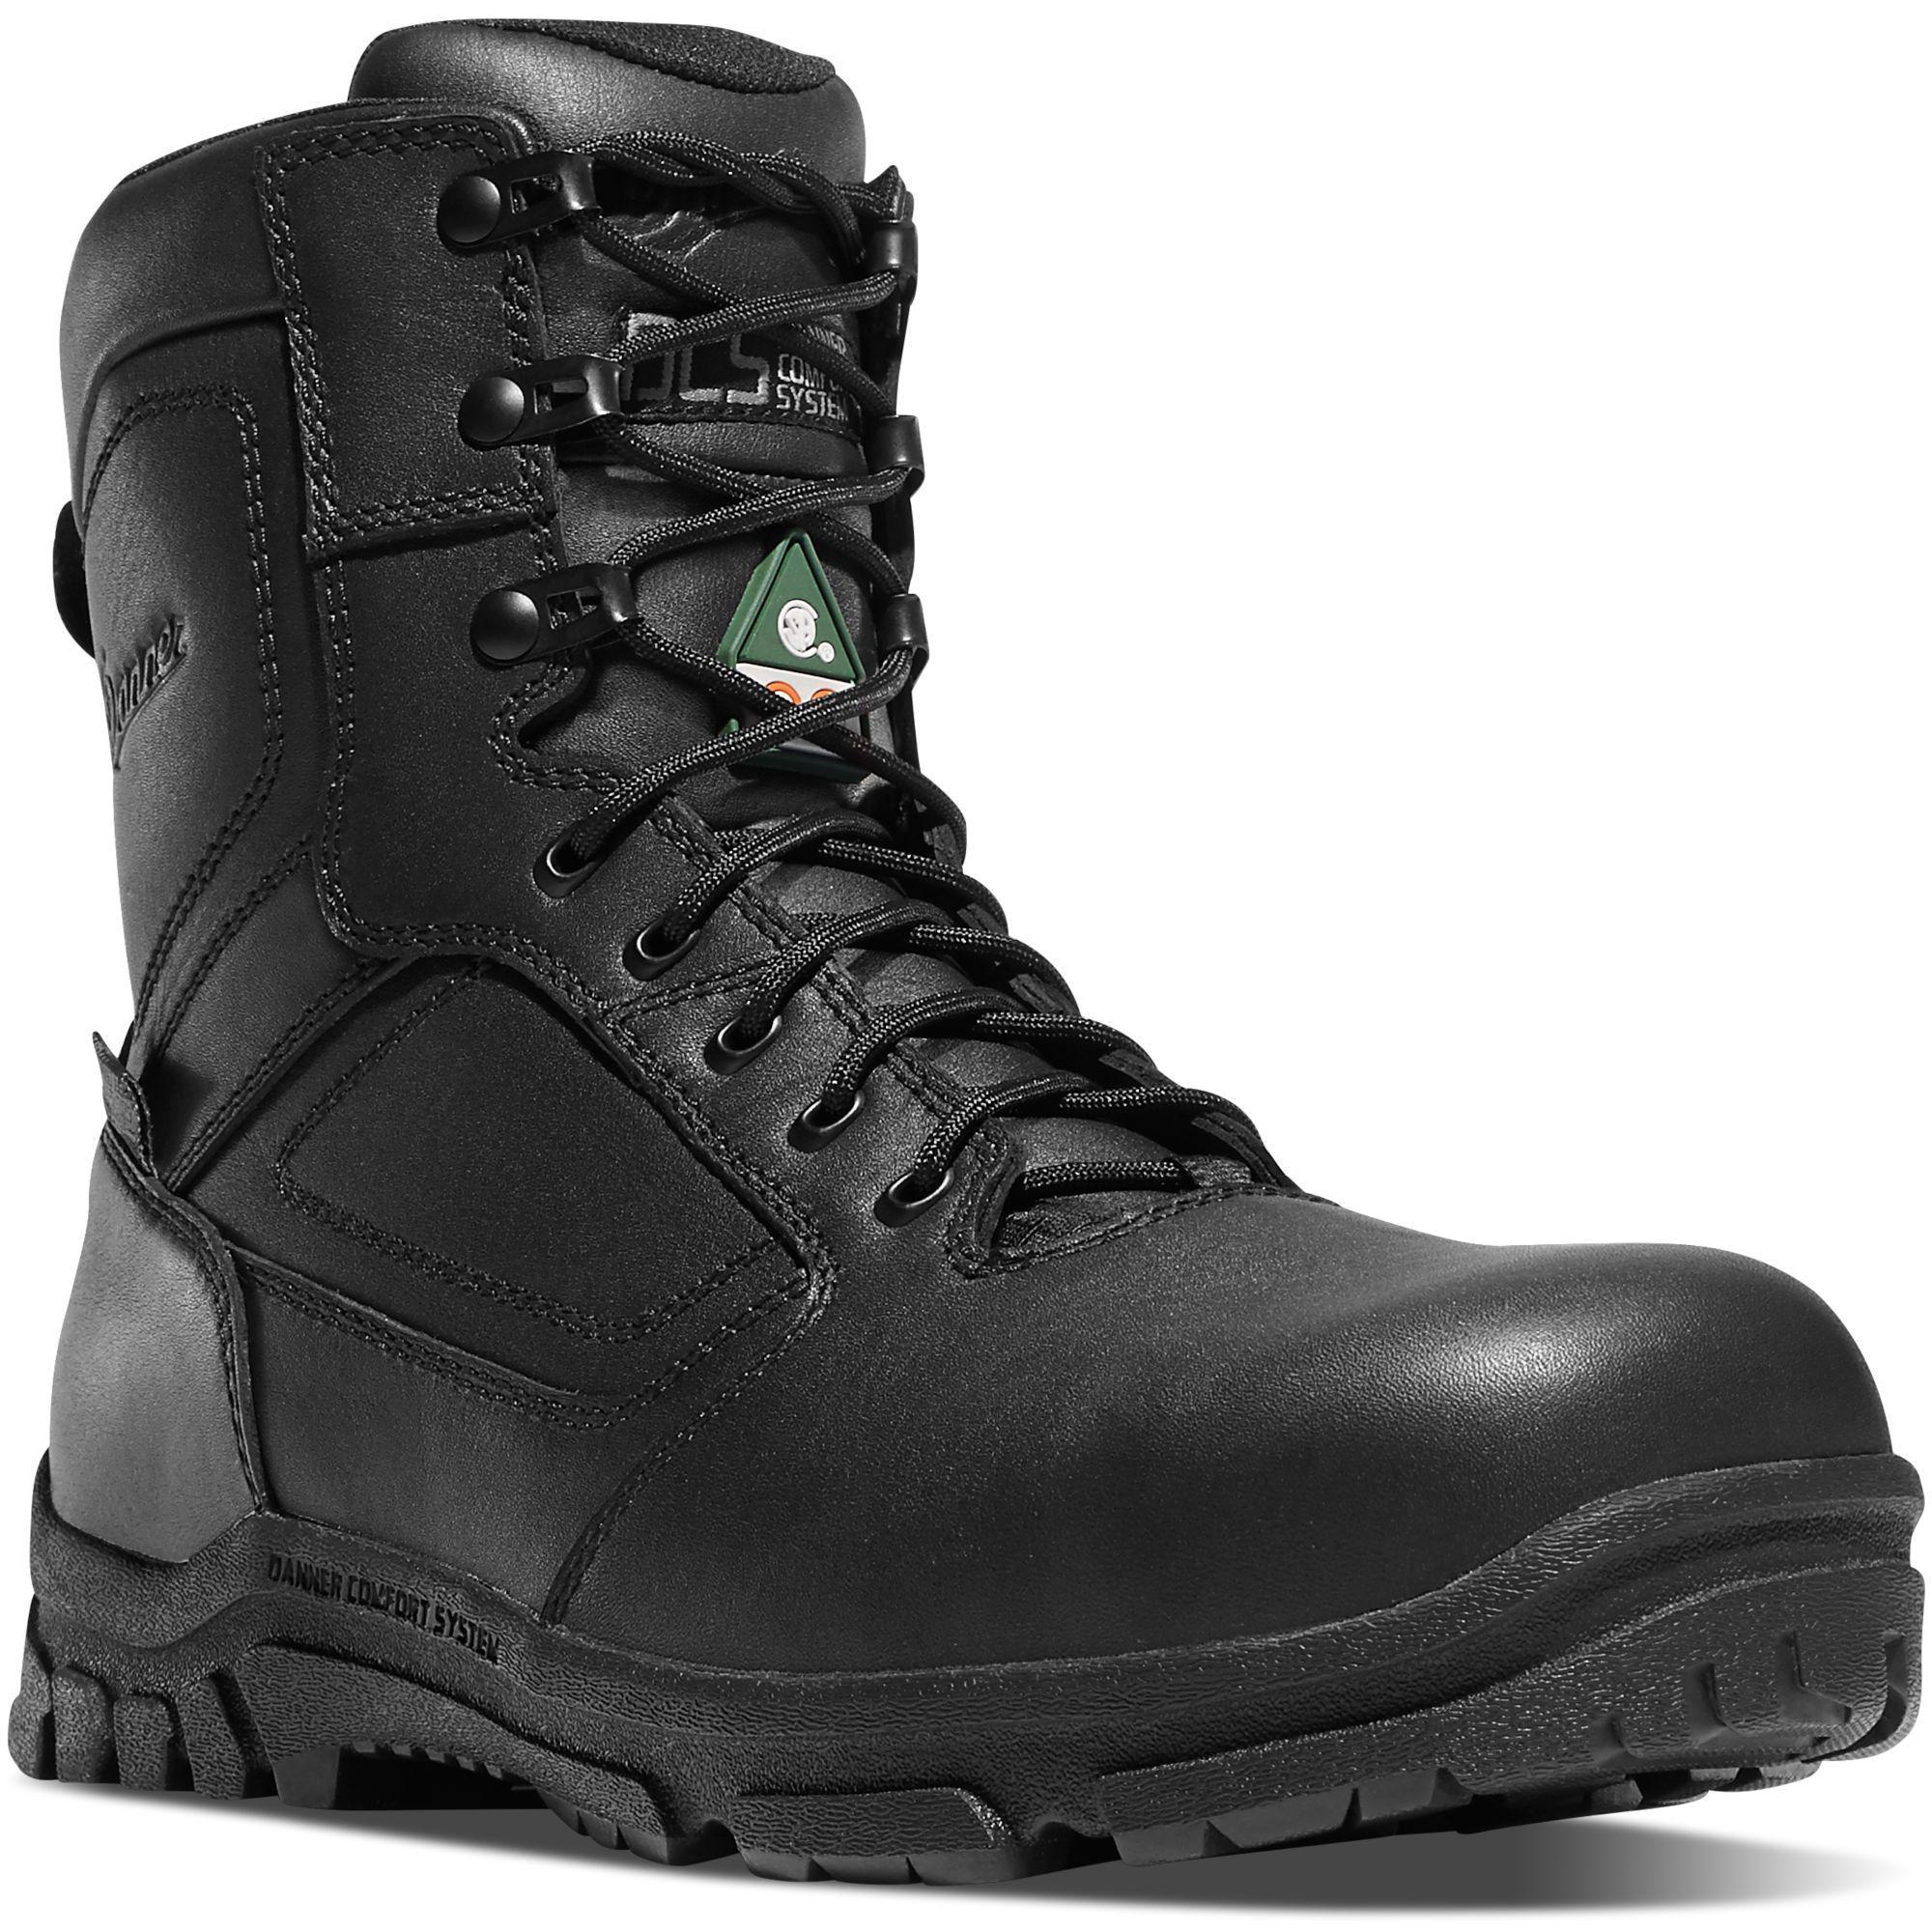 Danner Men's Lookout EMS 8" Side Zip Comp Toe WP Duty Boot Black 23826 7 / Medium / Black - Overlook Boots